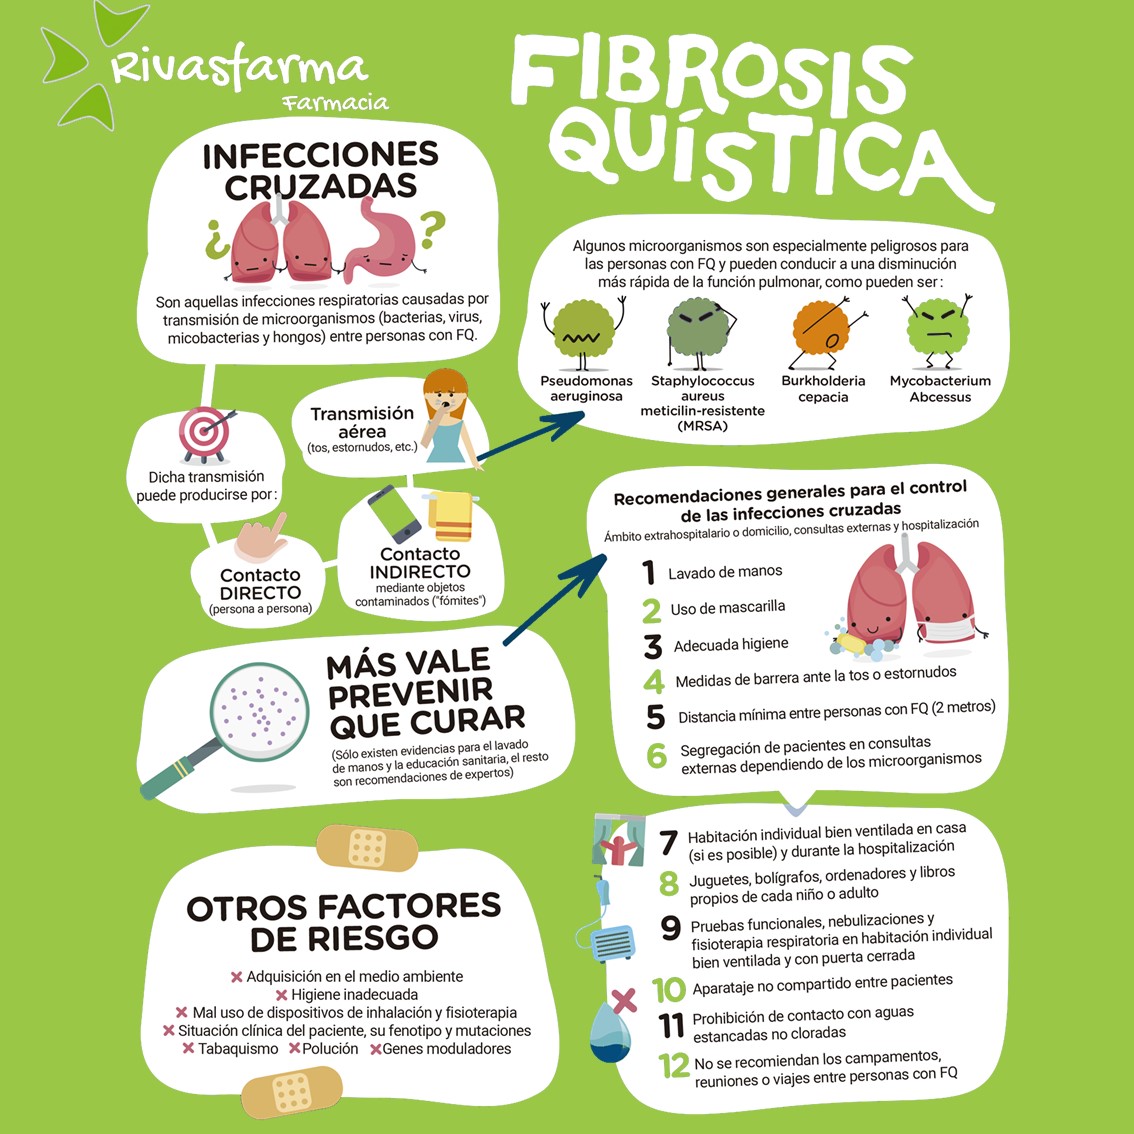 Hoy es el Día de la #FibrosisQuística y queremos compartir contigo más sobre esta enfermedad que en nuestro país afecta a 1 de cada 5.000 nacidos, mientras que 1 de cada 35 habitantes son portadores sanos de la enfermedad.

#DíaMundialdelaFQ #ConocelaFQ #Rivasvaciamadrid #Madrid